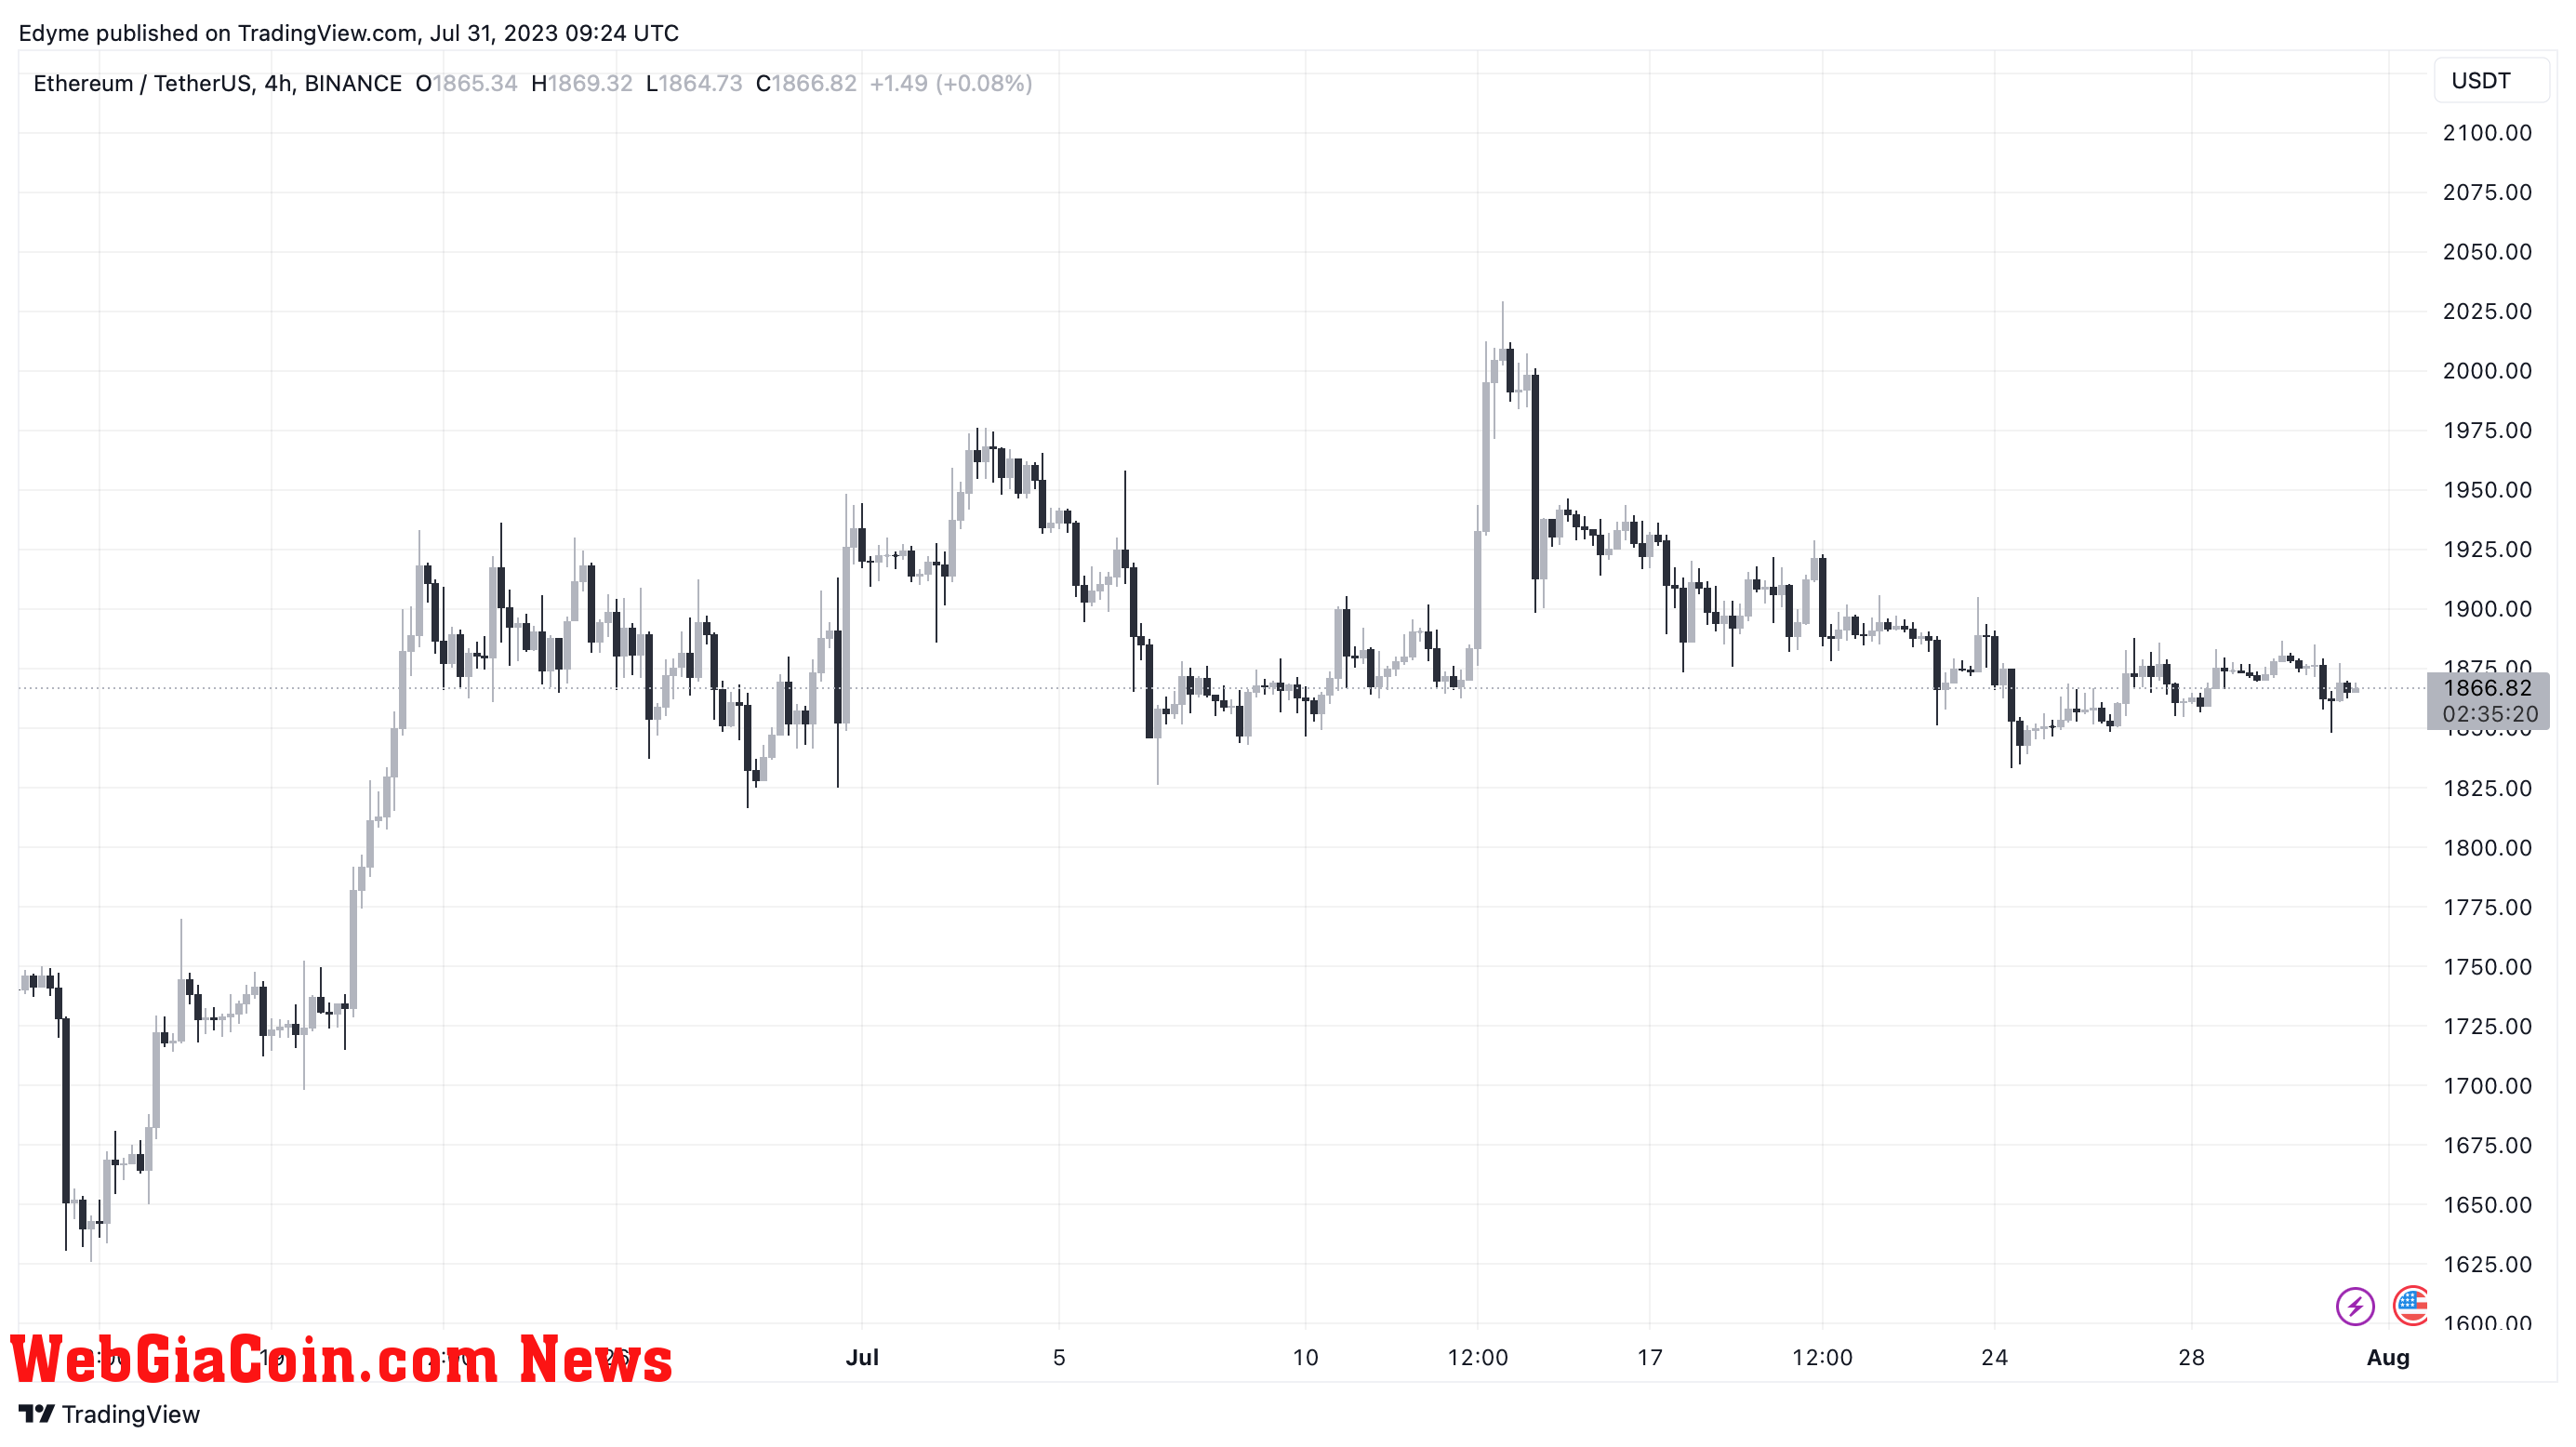 Ethereum (ETH)’s price chart on TradingView